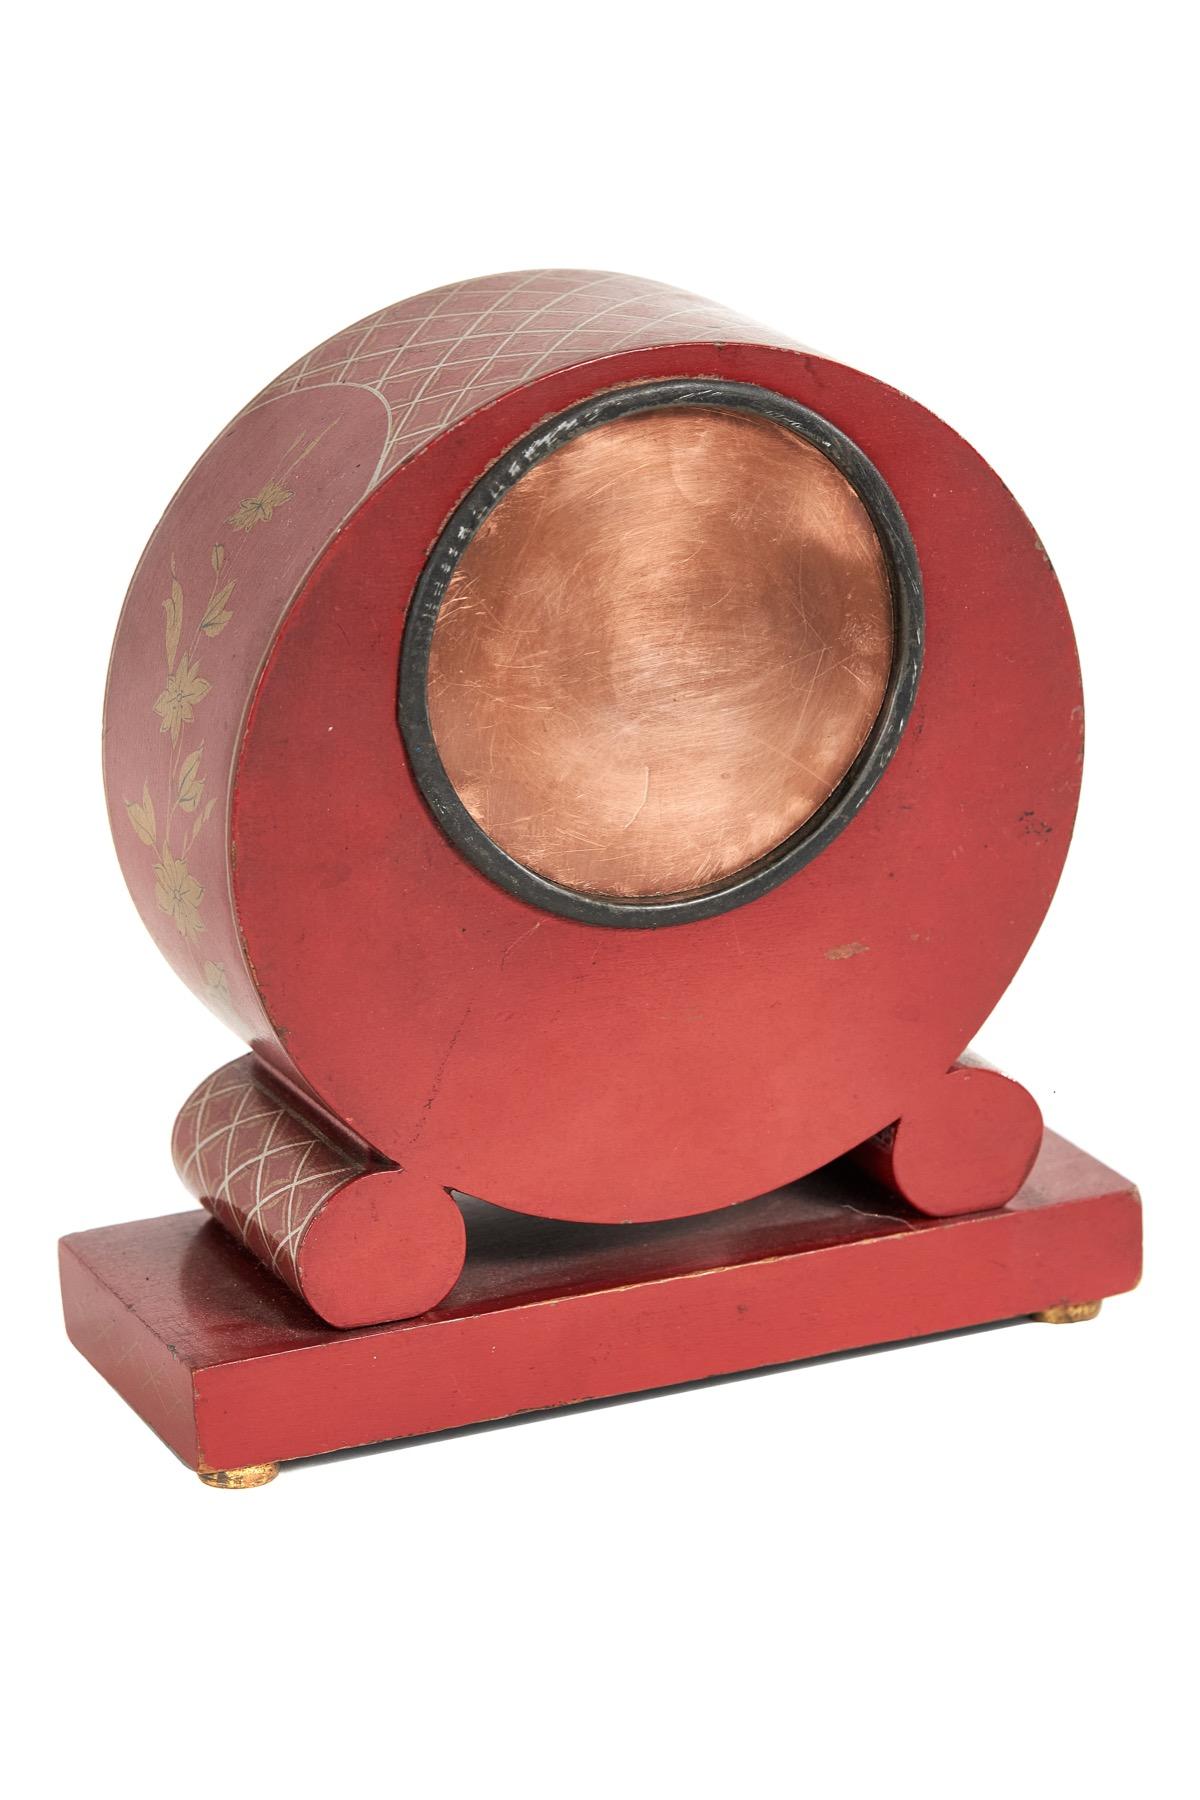 Chinoiserie-Kaminuhr, dekoriert, ca. 1930er Jahre
Die Farbe ist Rot und Gold, 
Kreisförmiges Gehäuse  gestützt durch zwei runde Bolster
Rechteckiger Sockel, 4 Messingfüße
Gehäuse mit Chinoiserie-Details verziert 
Kuppelglas, Oberfläche cremefarben